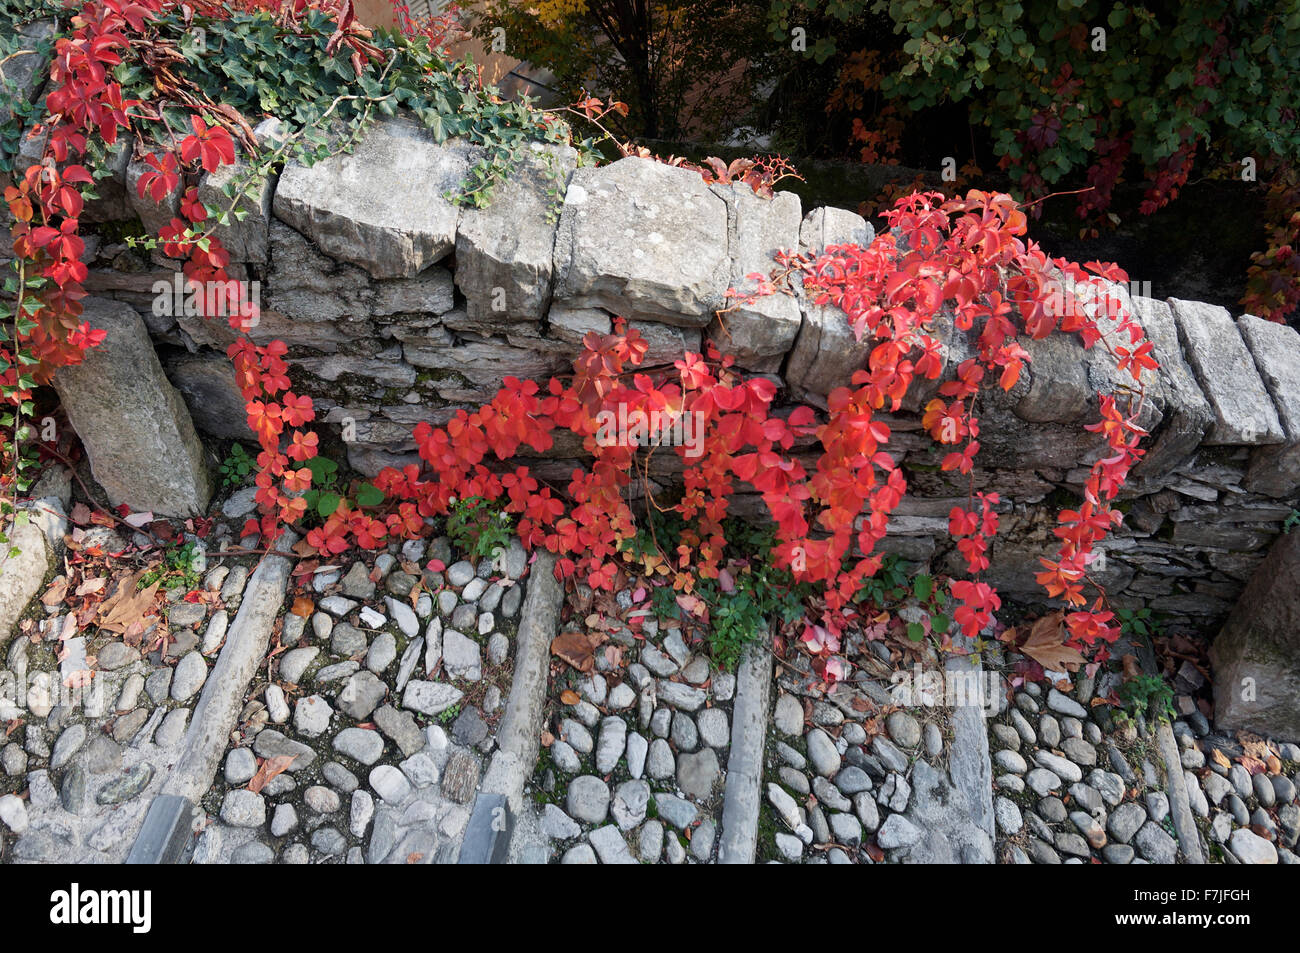 Virginia creeper feuilles rouges sur l'escalier en pierre Banque D'Images